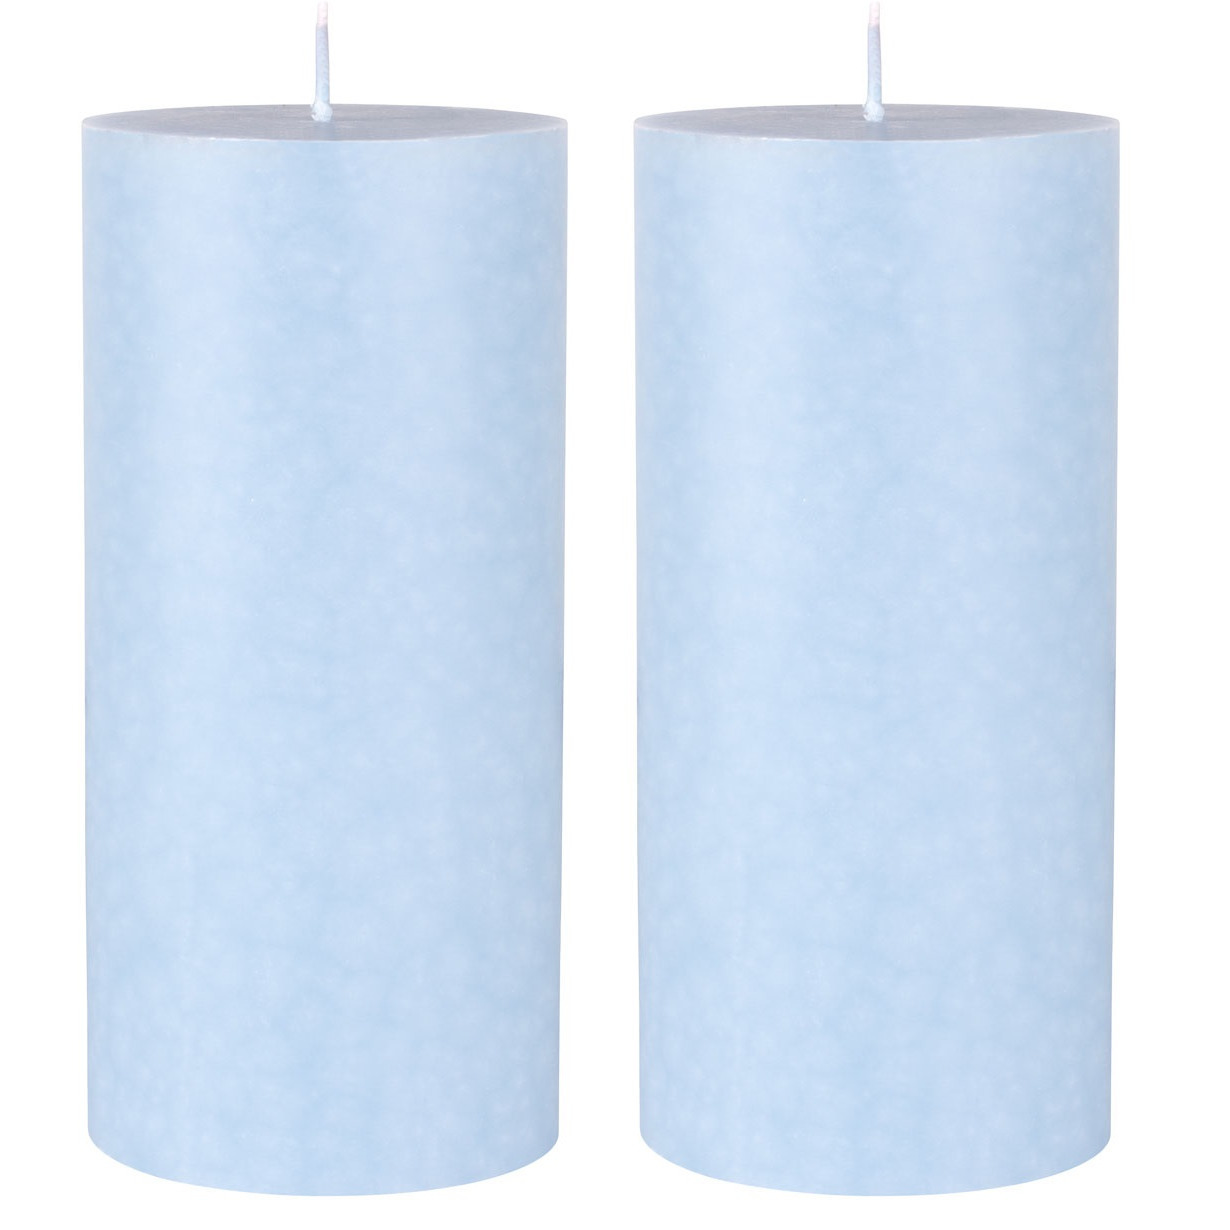 2x stuks lichtblauwe cilinder kaarsen -stompkaarsen 15 x 7 cm 50 branduren sfeerkaarsen lichtblauw